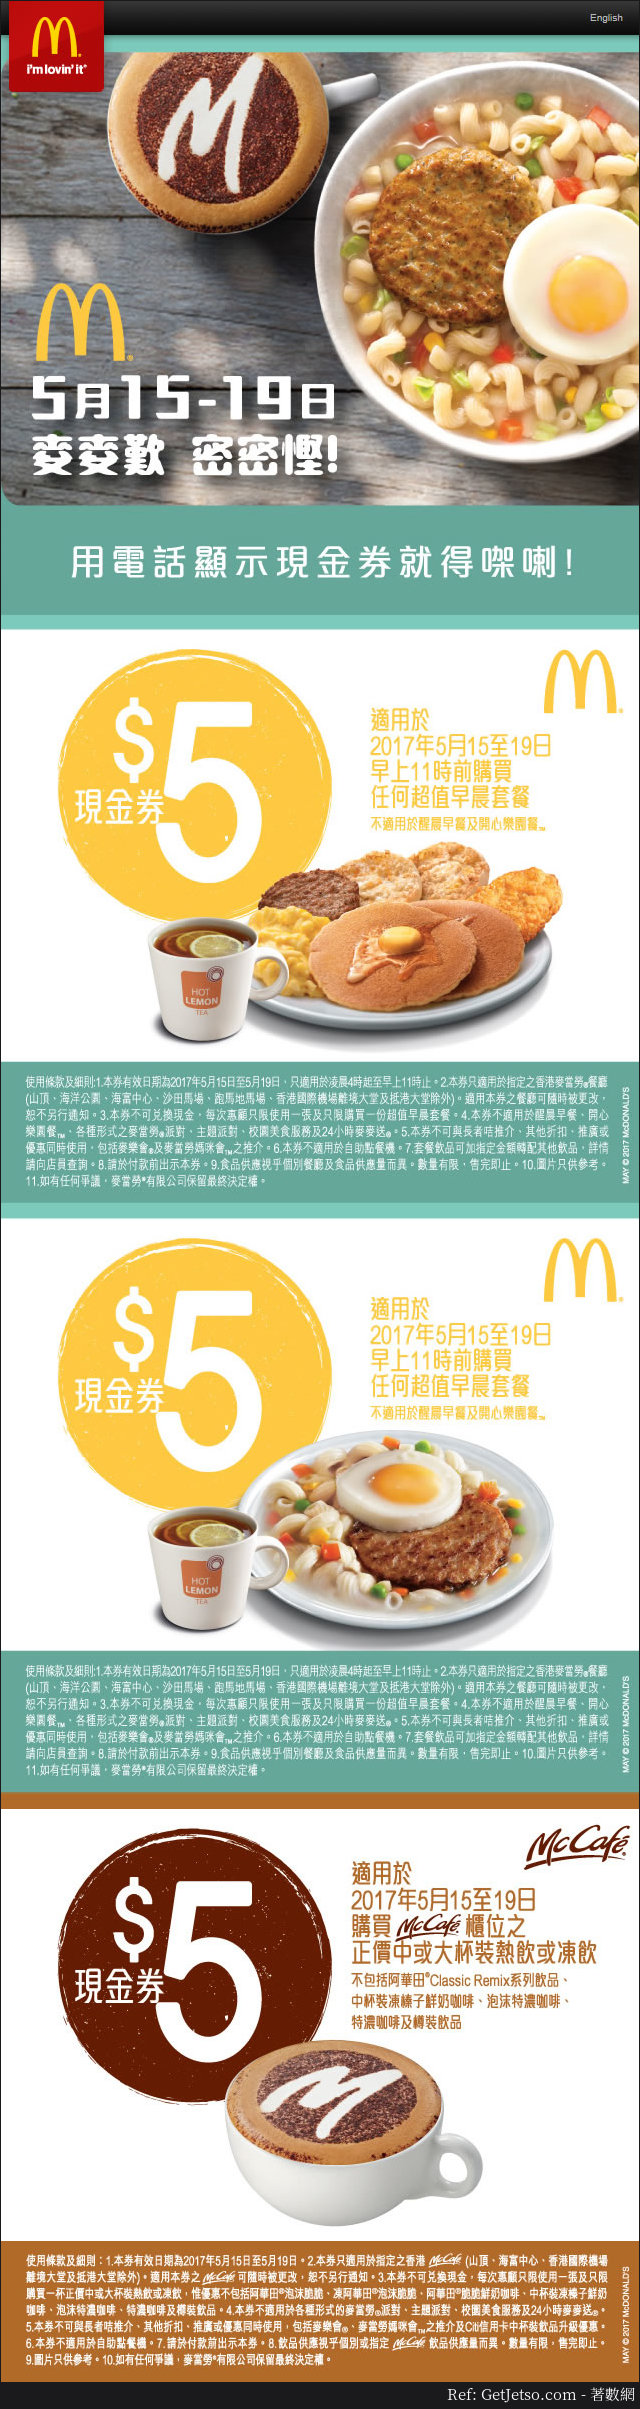 麥當勞早晨/超值套餐優惠券(17年5月15-19日)圖片1